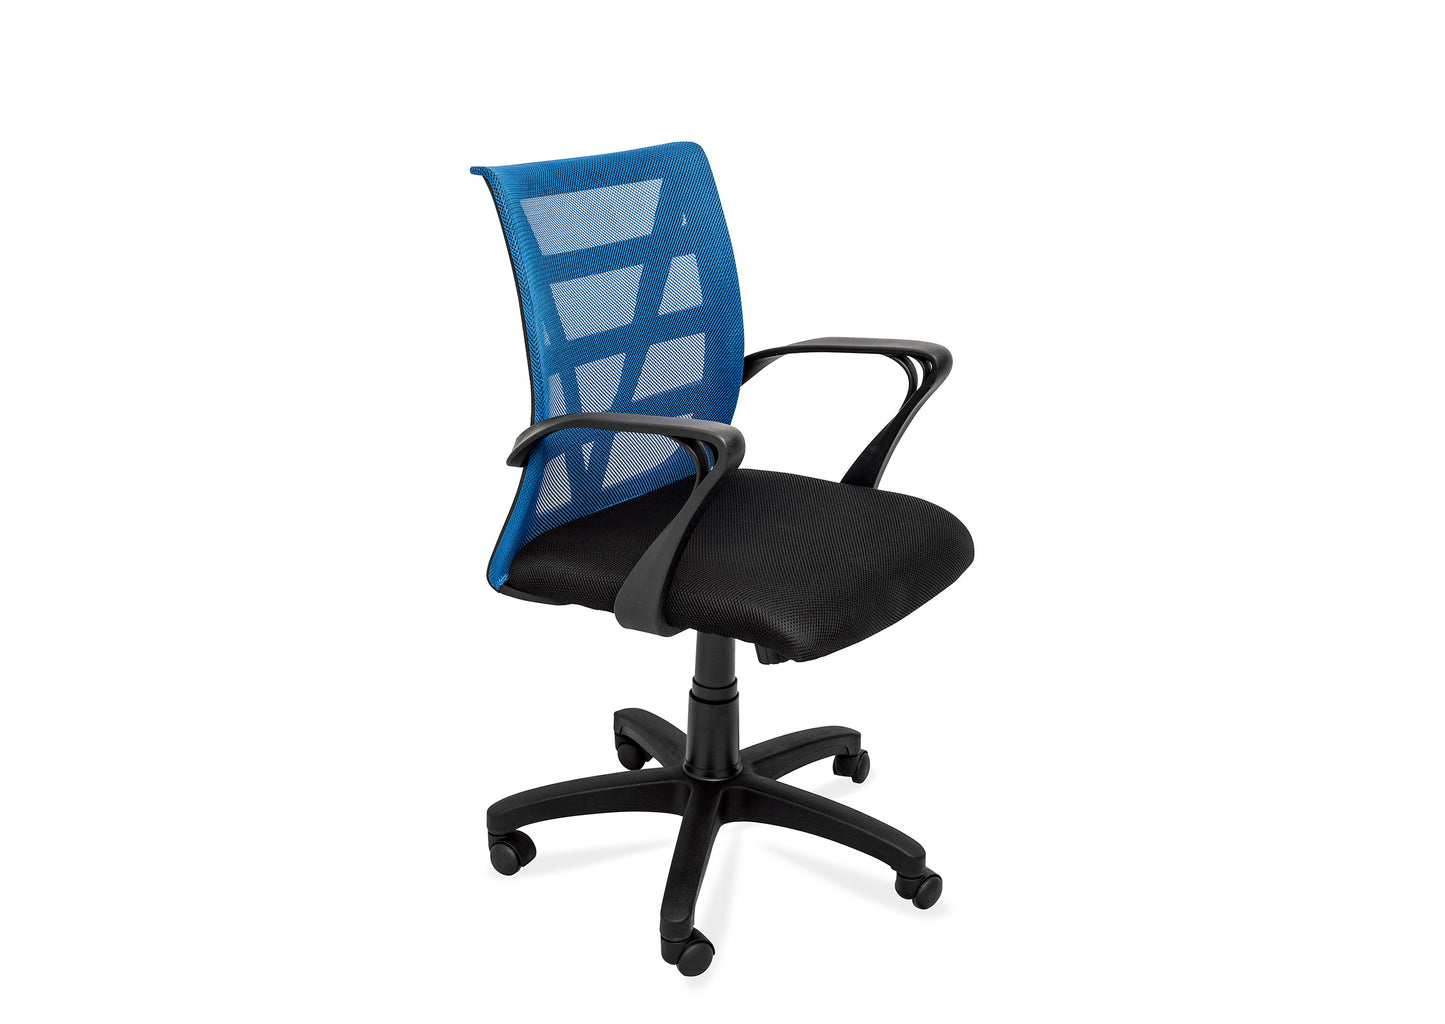 ErgoHome CL Office Chair - Blue